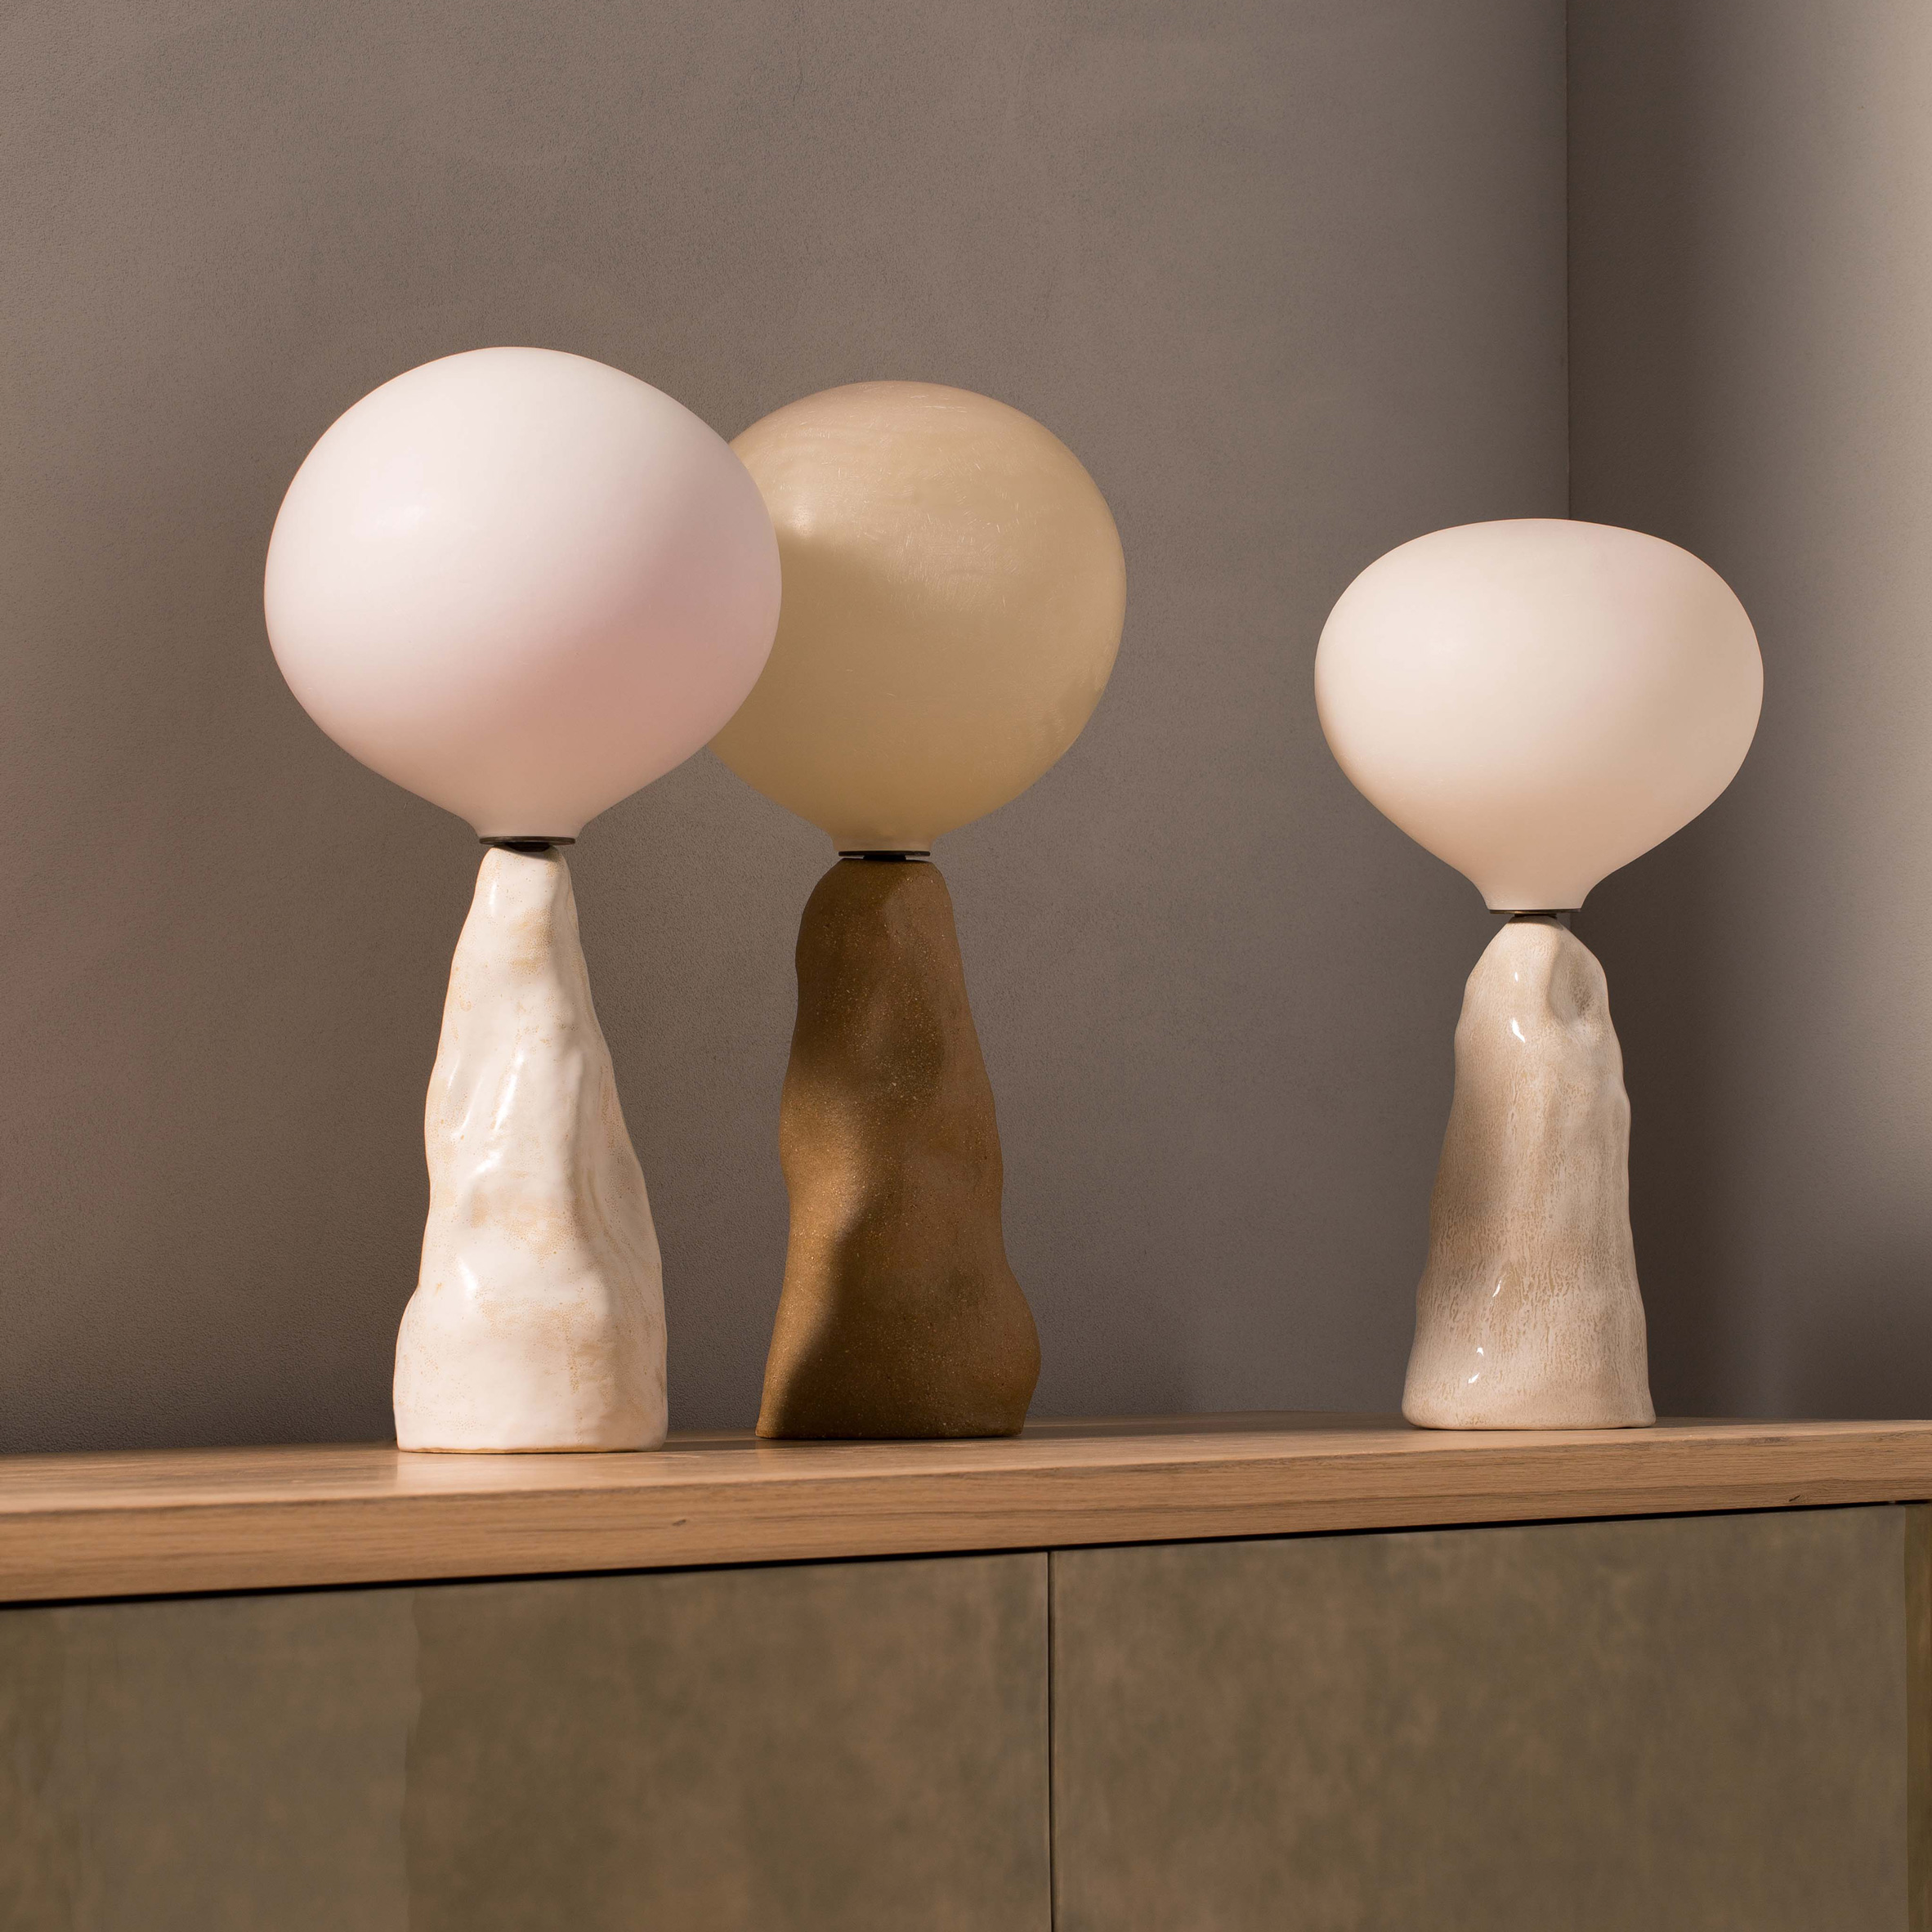 ET lamps by Pierre Yovanovitch